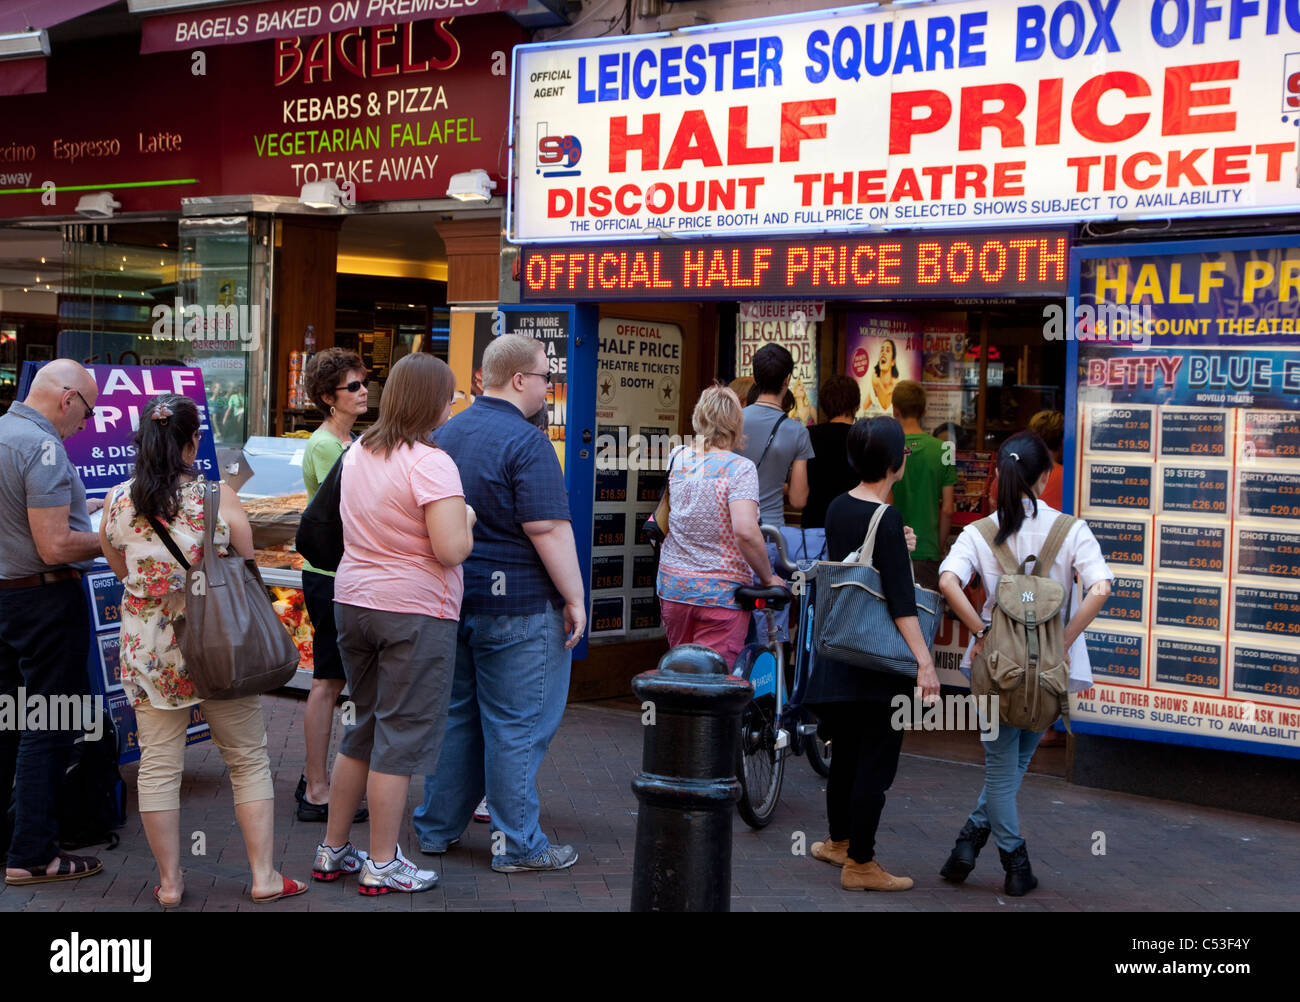 File d'attente pour la moitié du prix des places de théâtre, de Leicester Square, Londres Banque D'Images